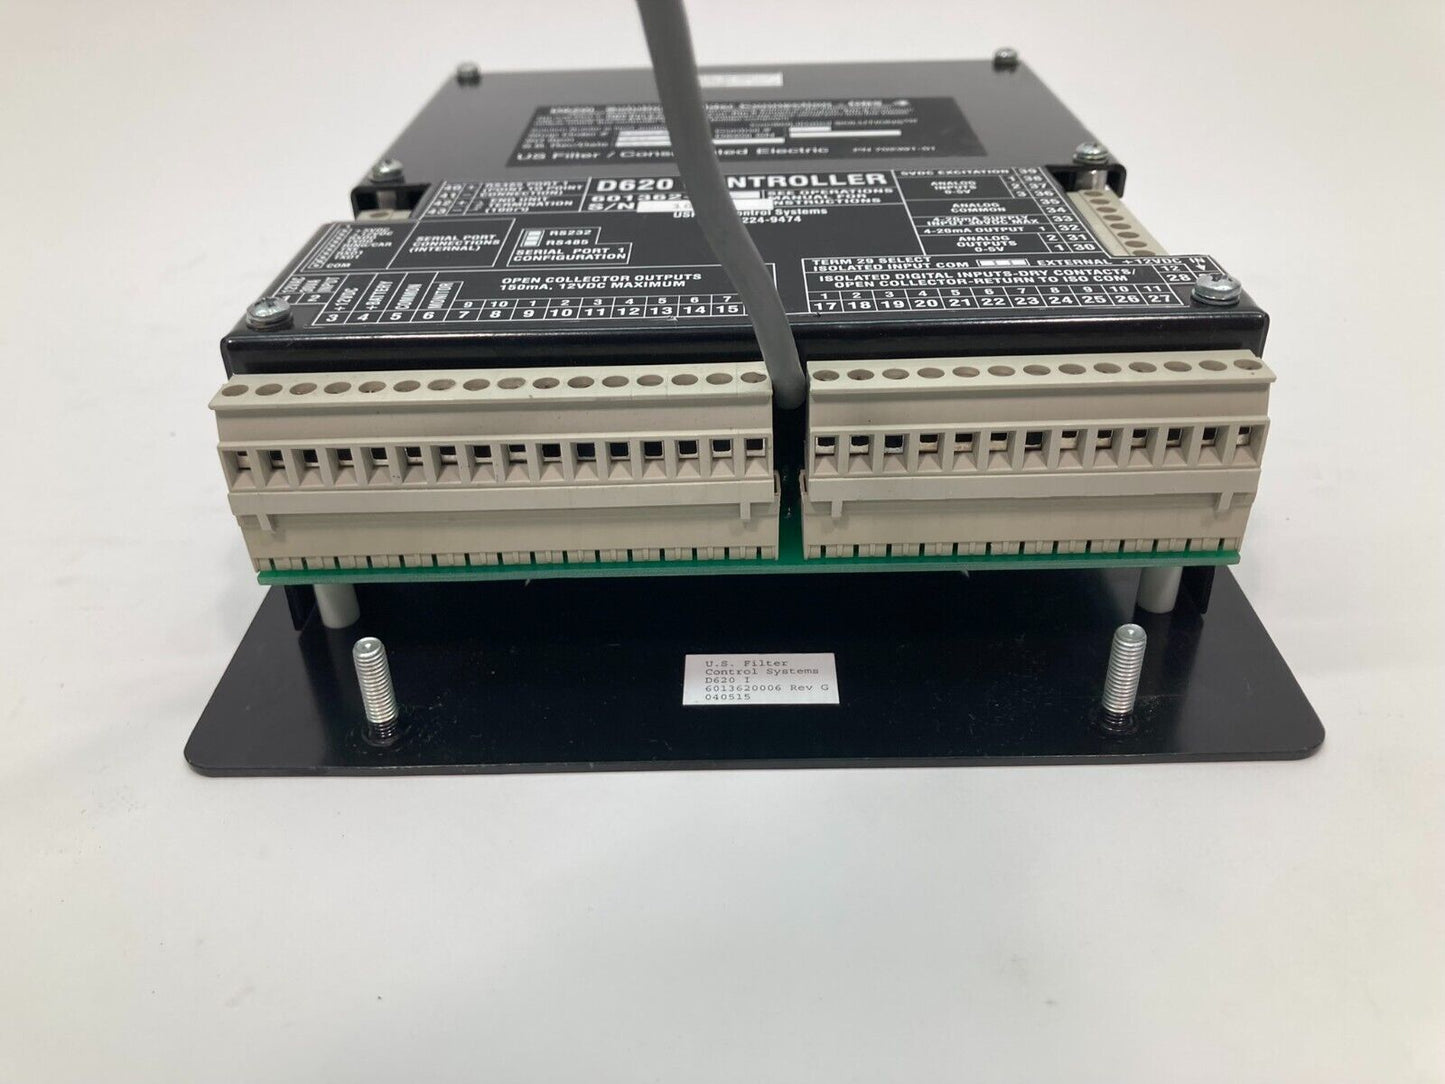 US Filter D620i / D620 601362 Controller / Solution Builder Connection